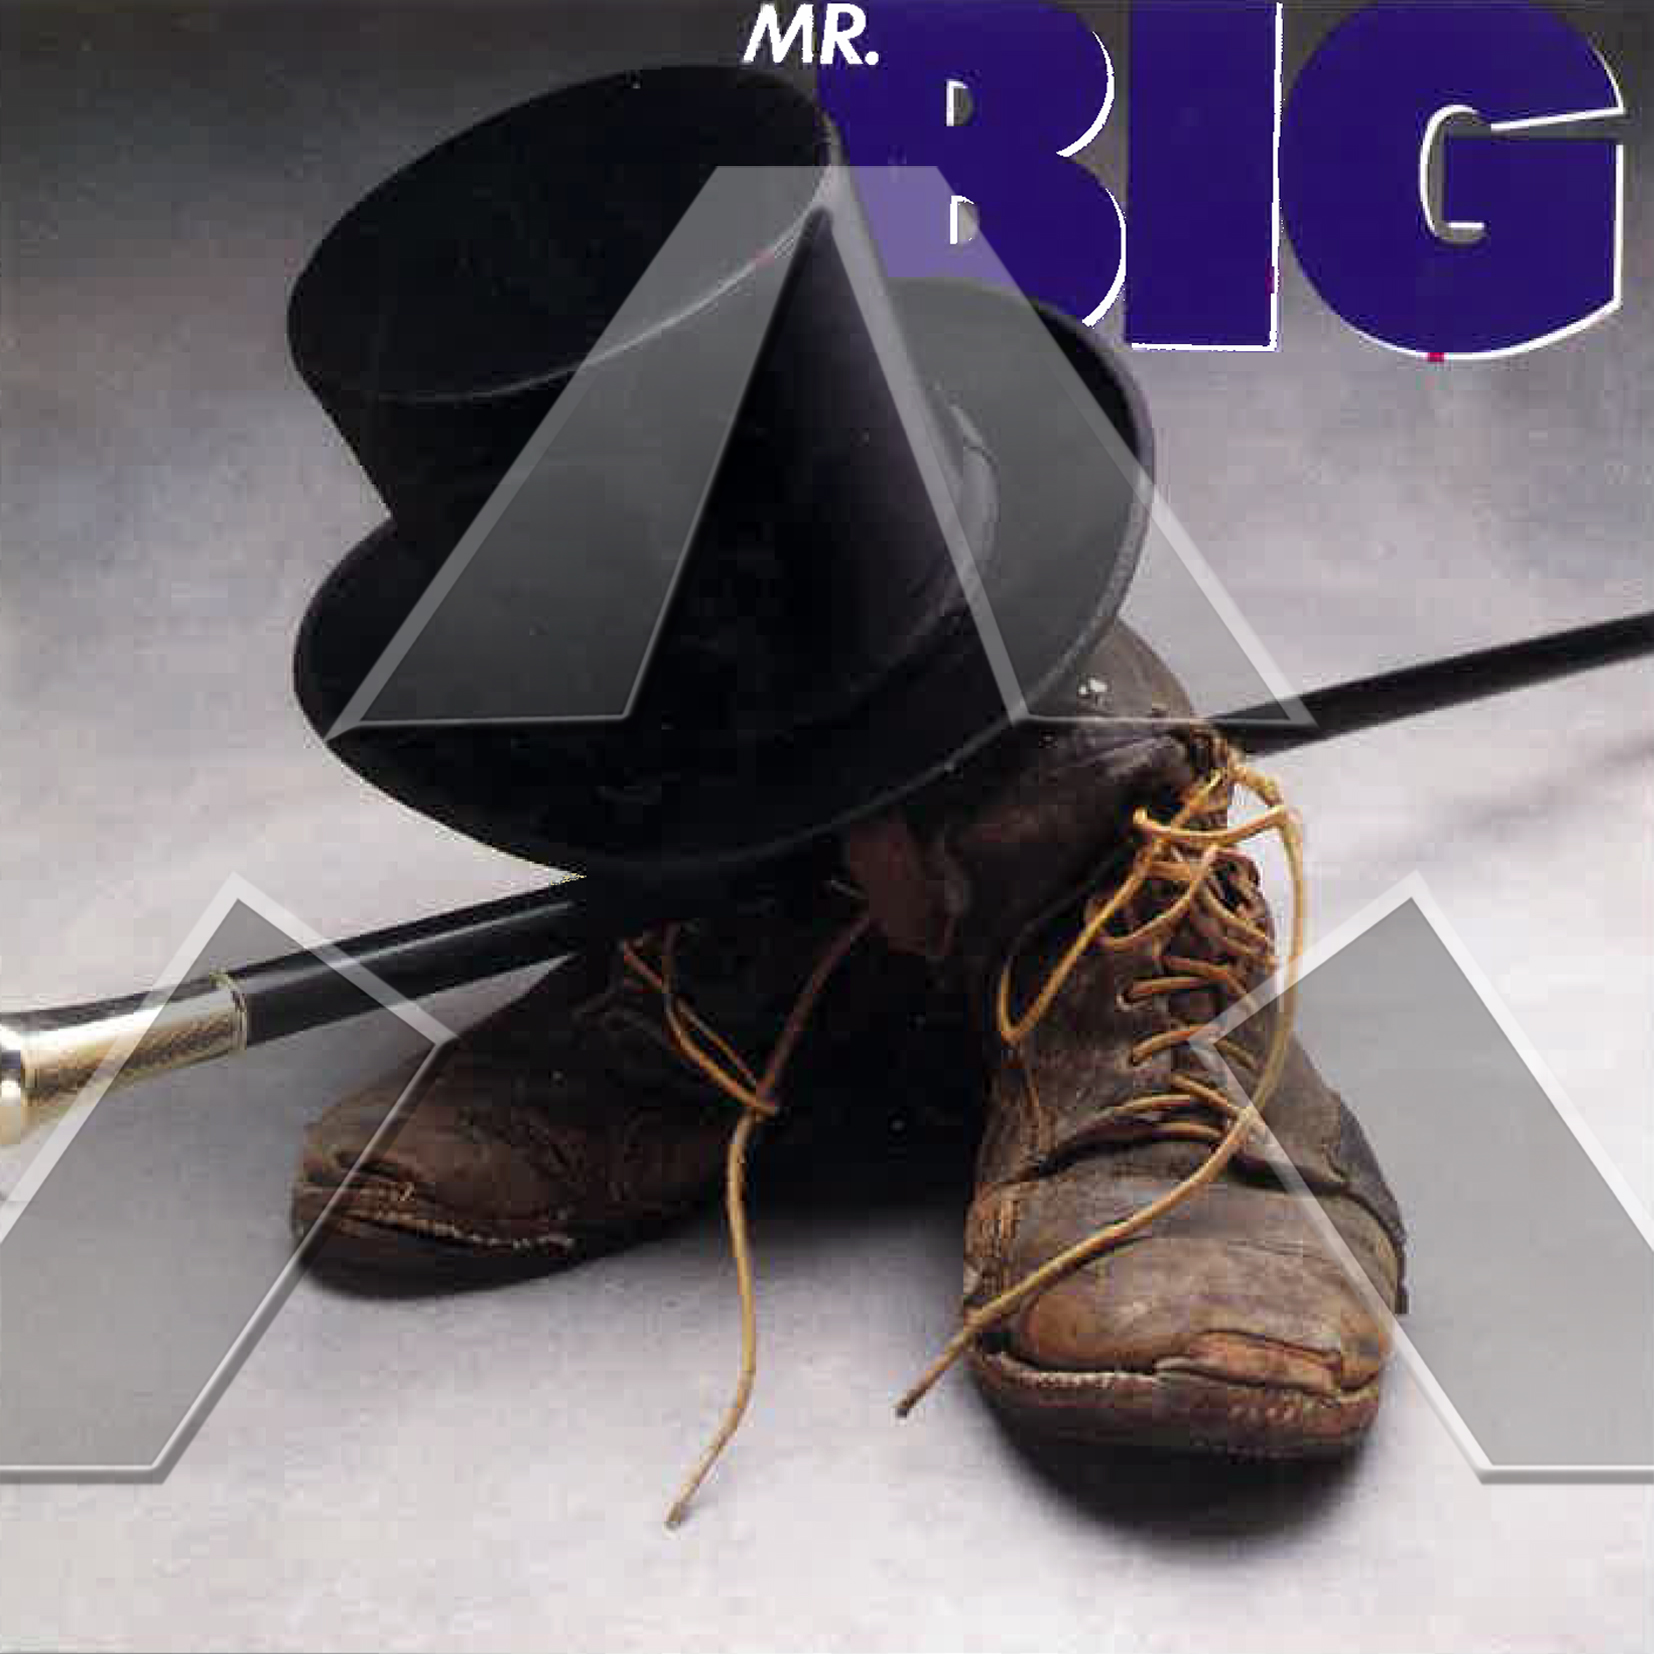 Mr. Big ★ Mr. Big (cd album EU 7567819902)